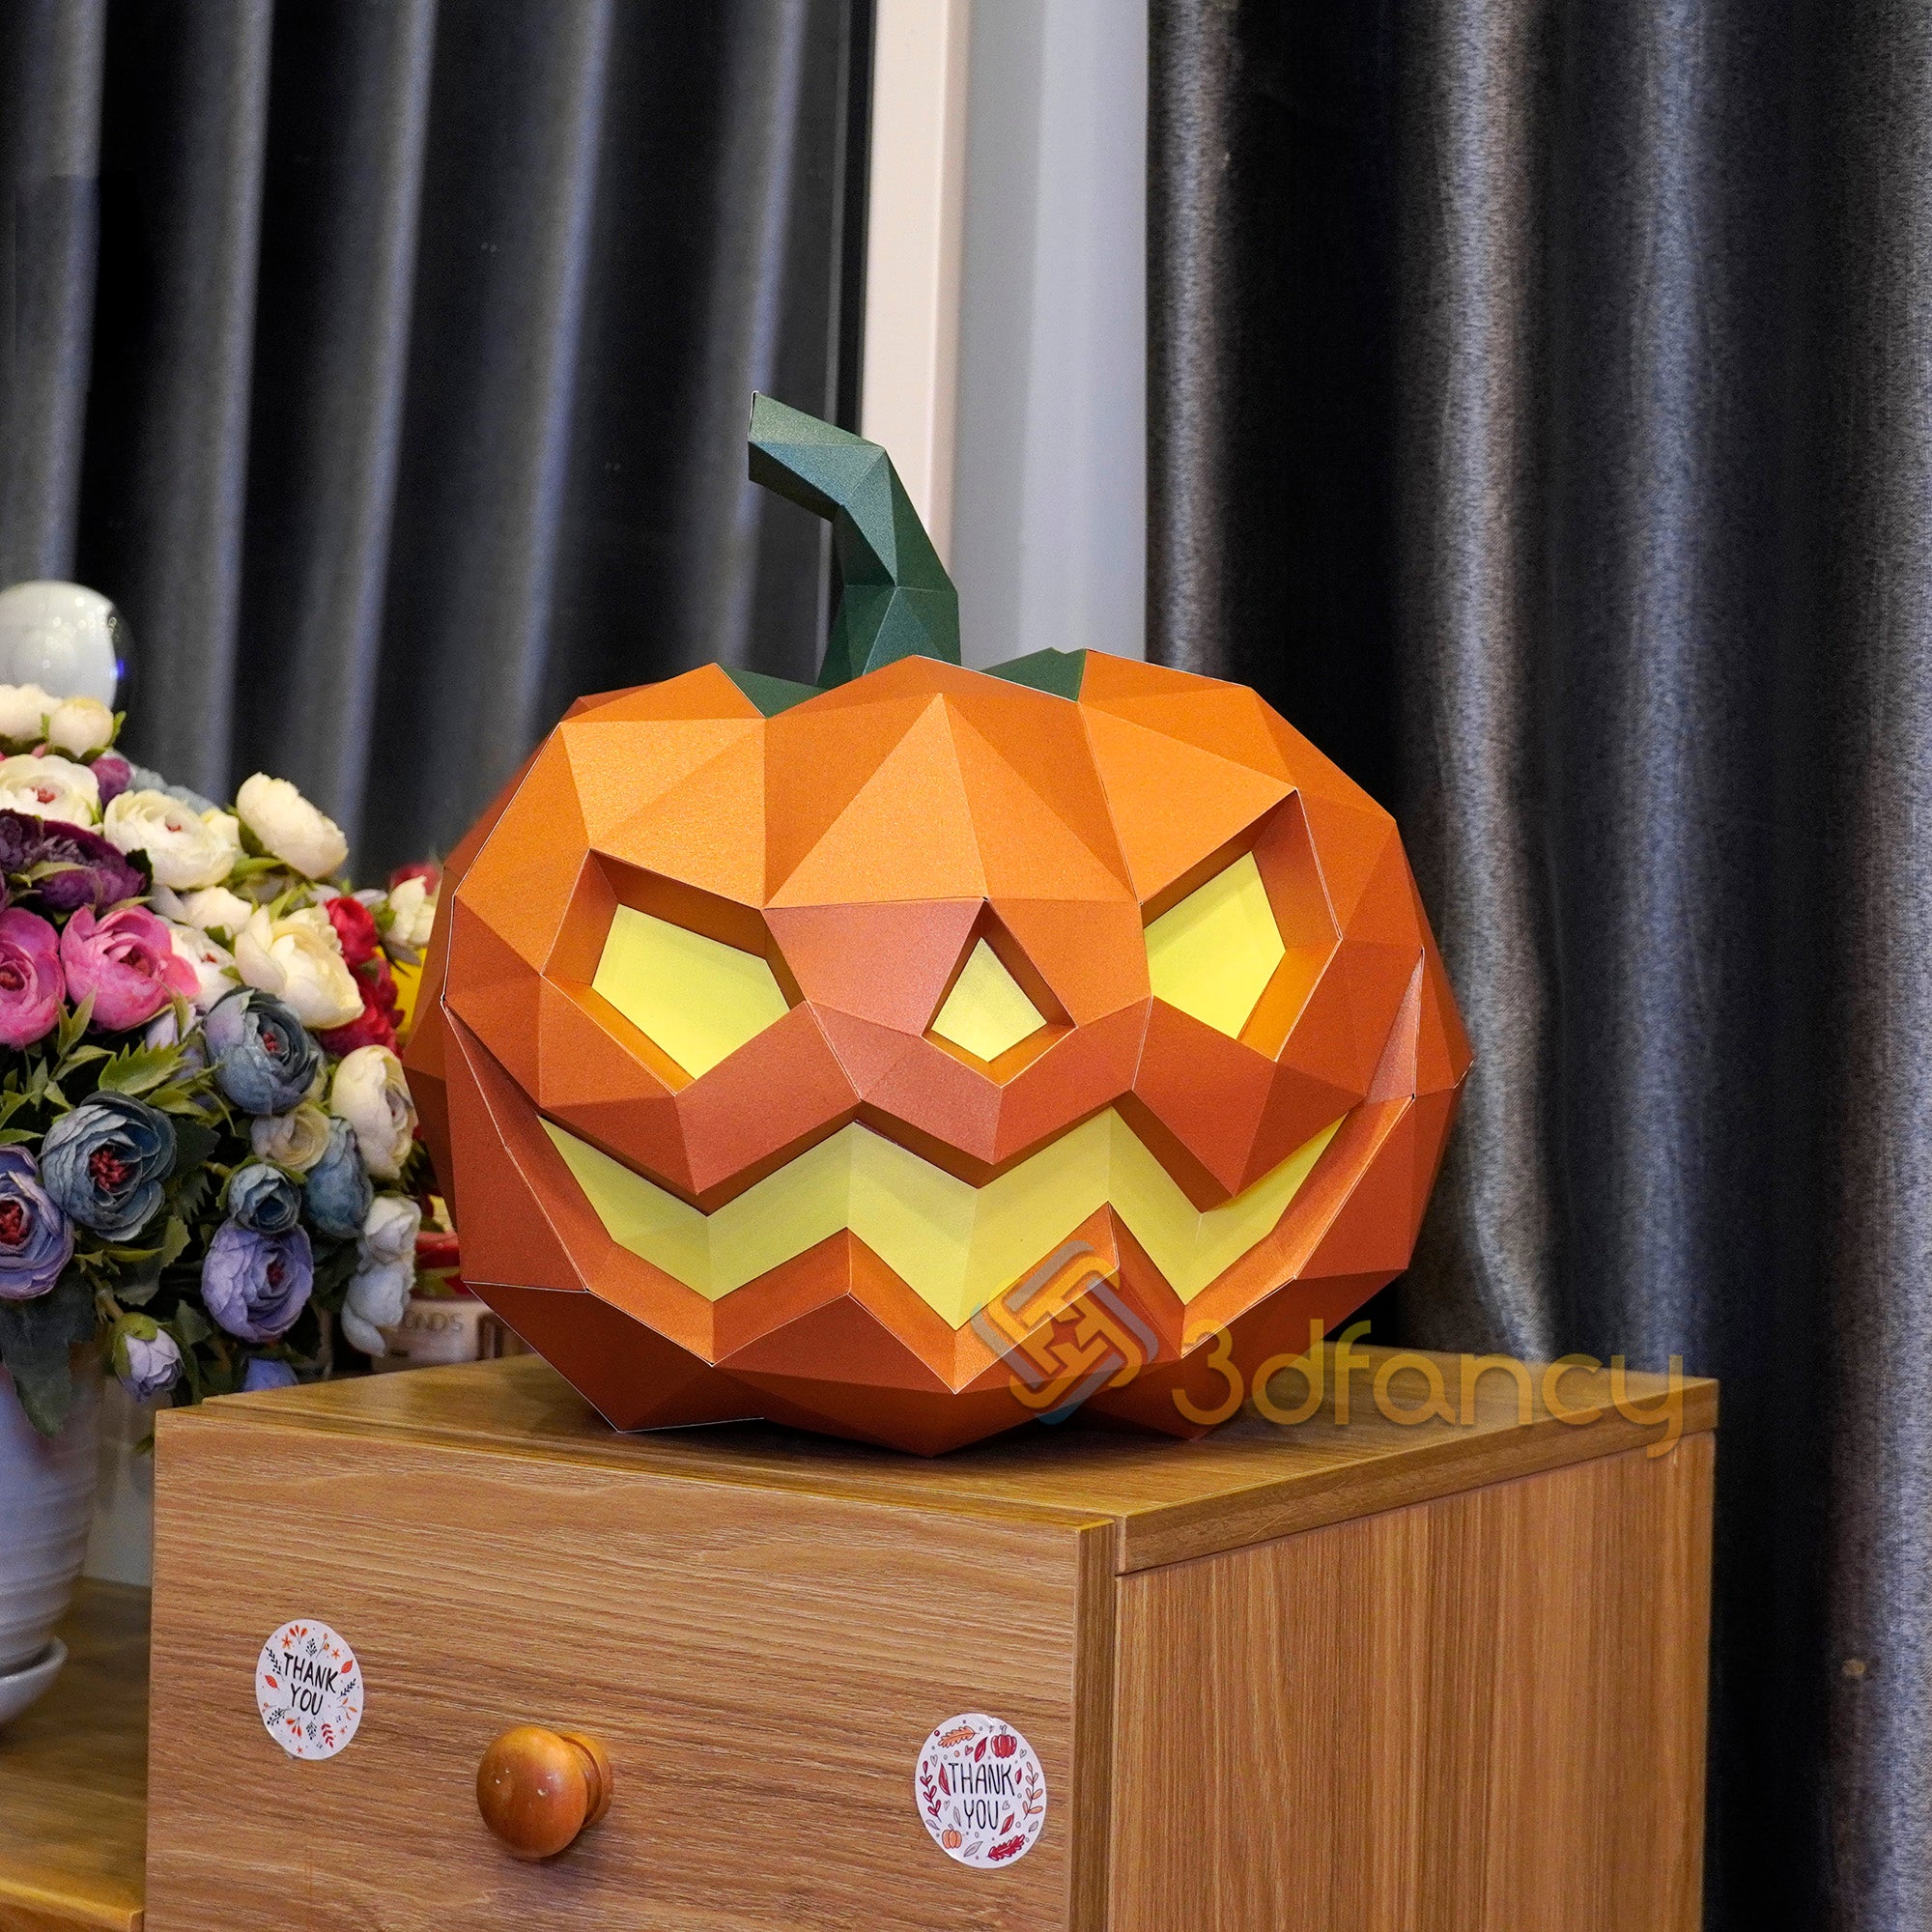 Pumpkin Papercraft PDF, SVG, Silhouette Studio Template For Creating 3D Pumpkin Halloween